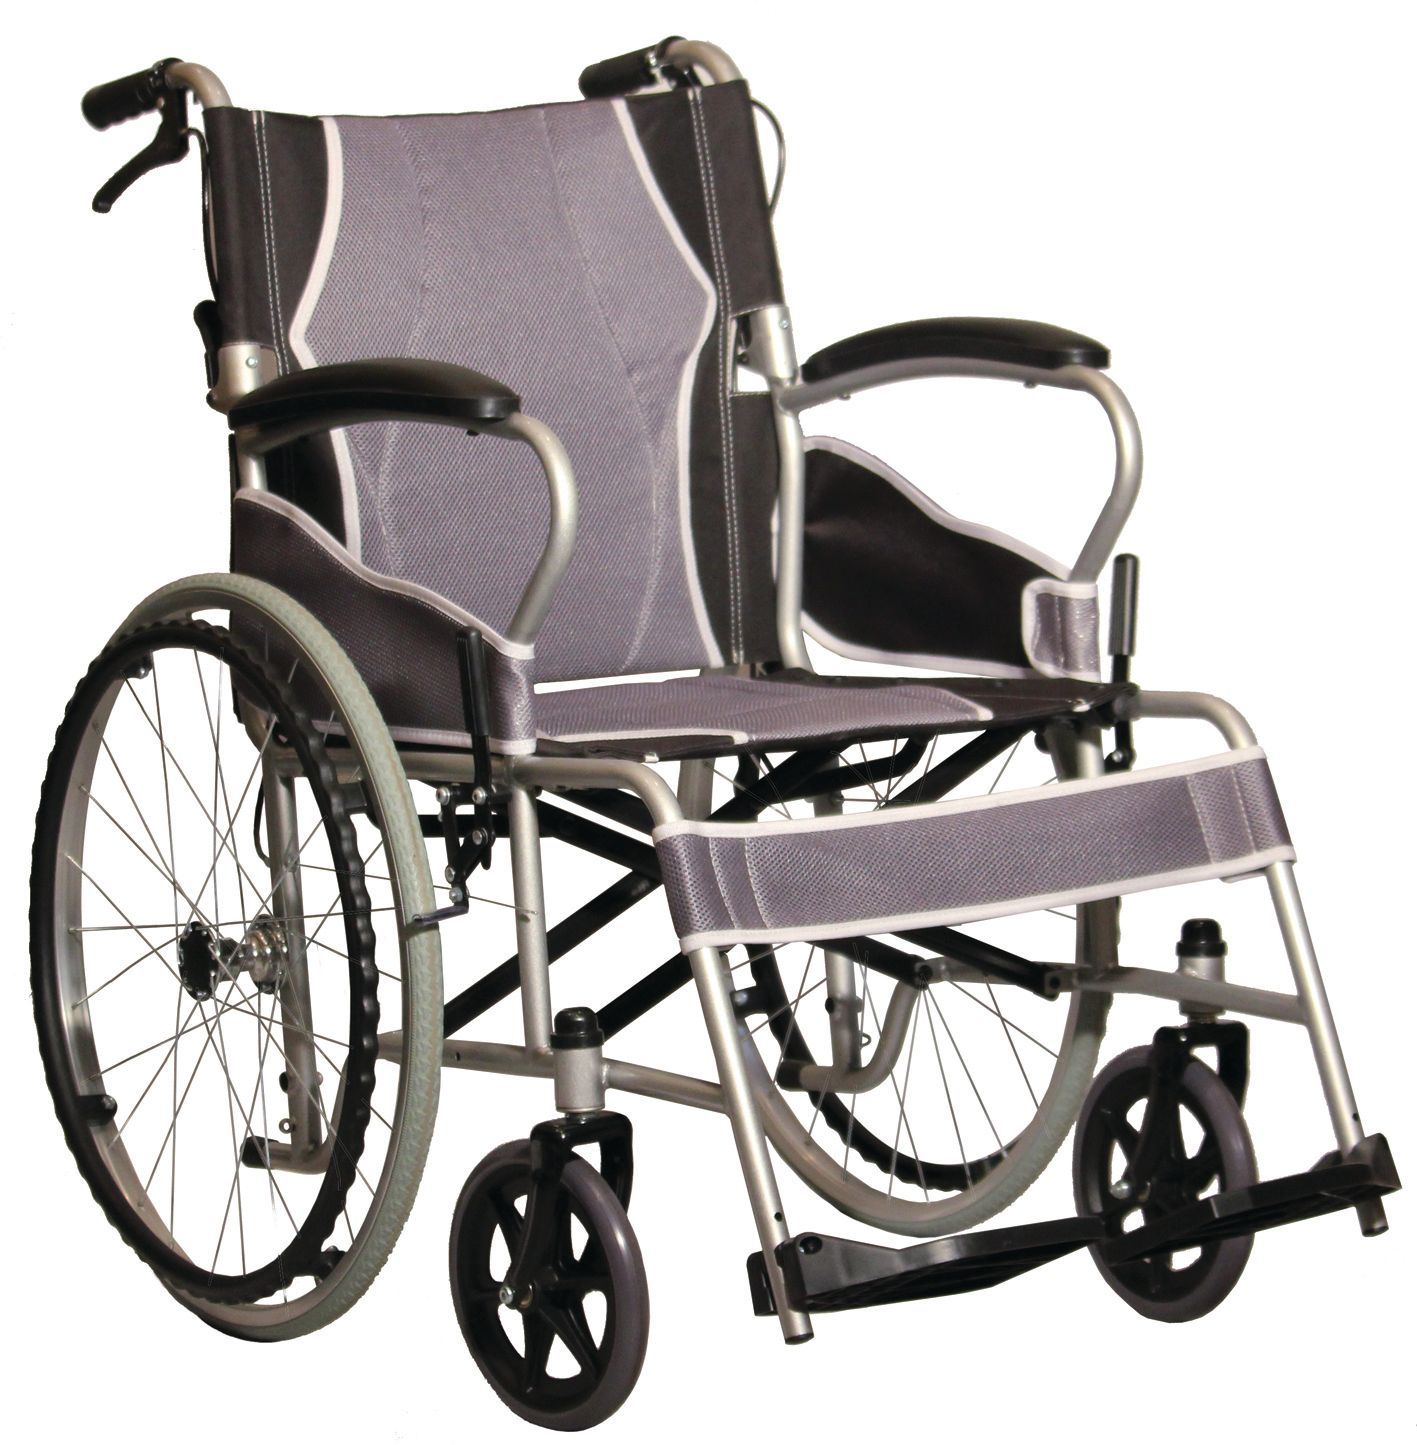 ANTAR extra leicht Rollstuhl faltbar Reise+Flug SB46cm 115kg Begleiterbremse